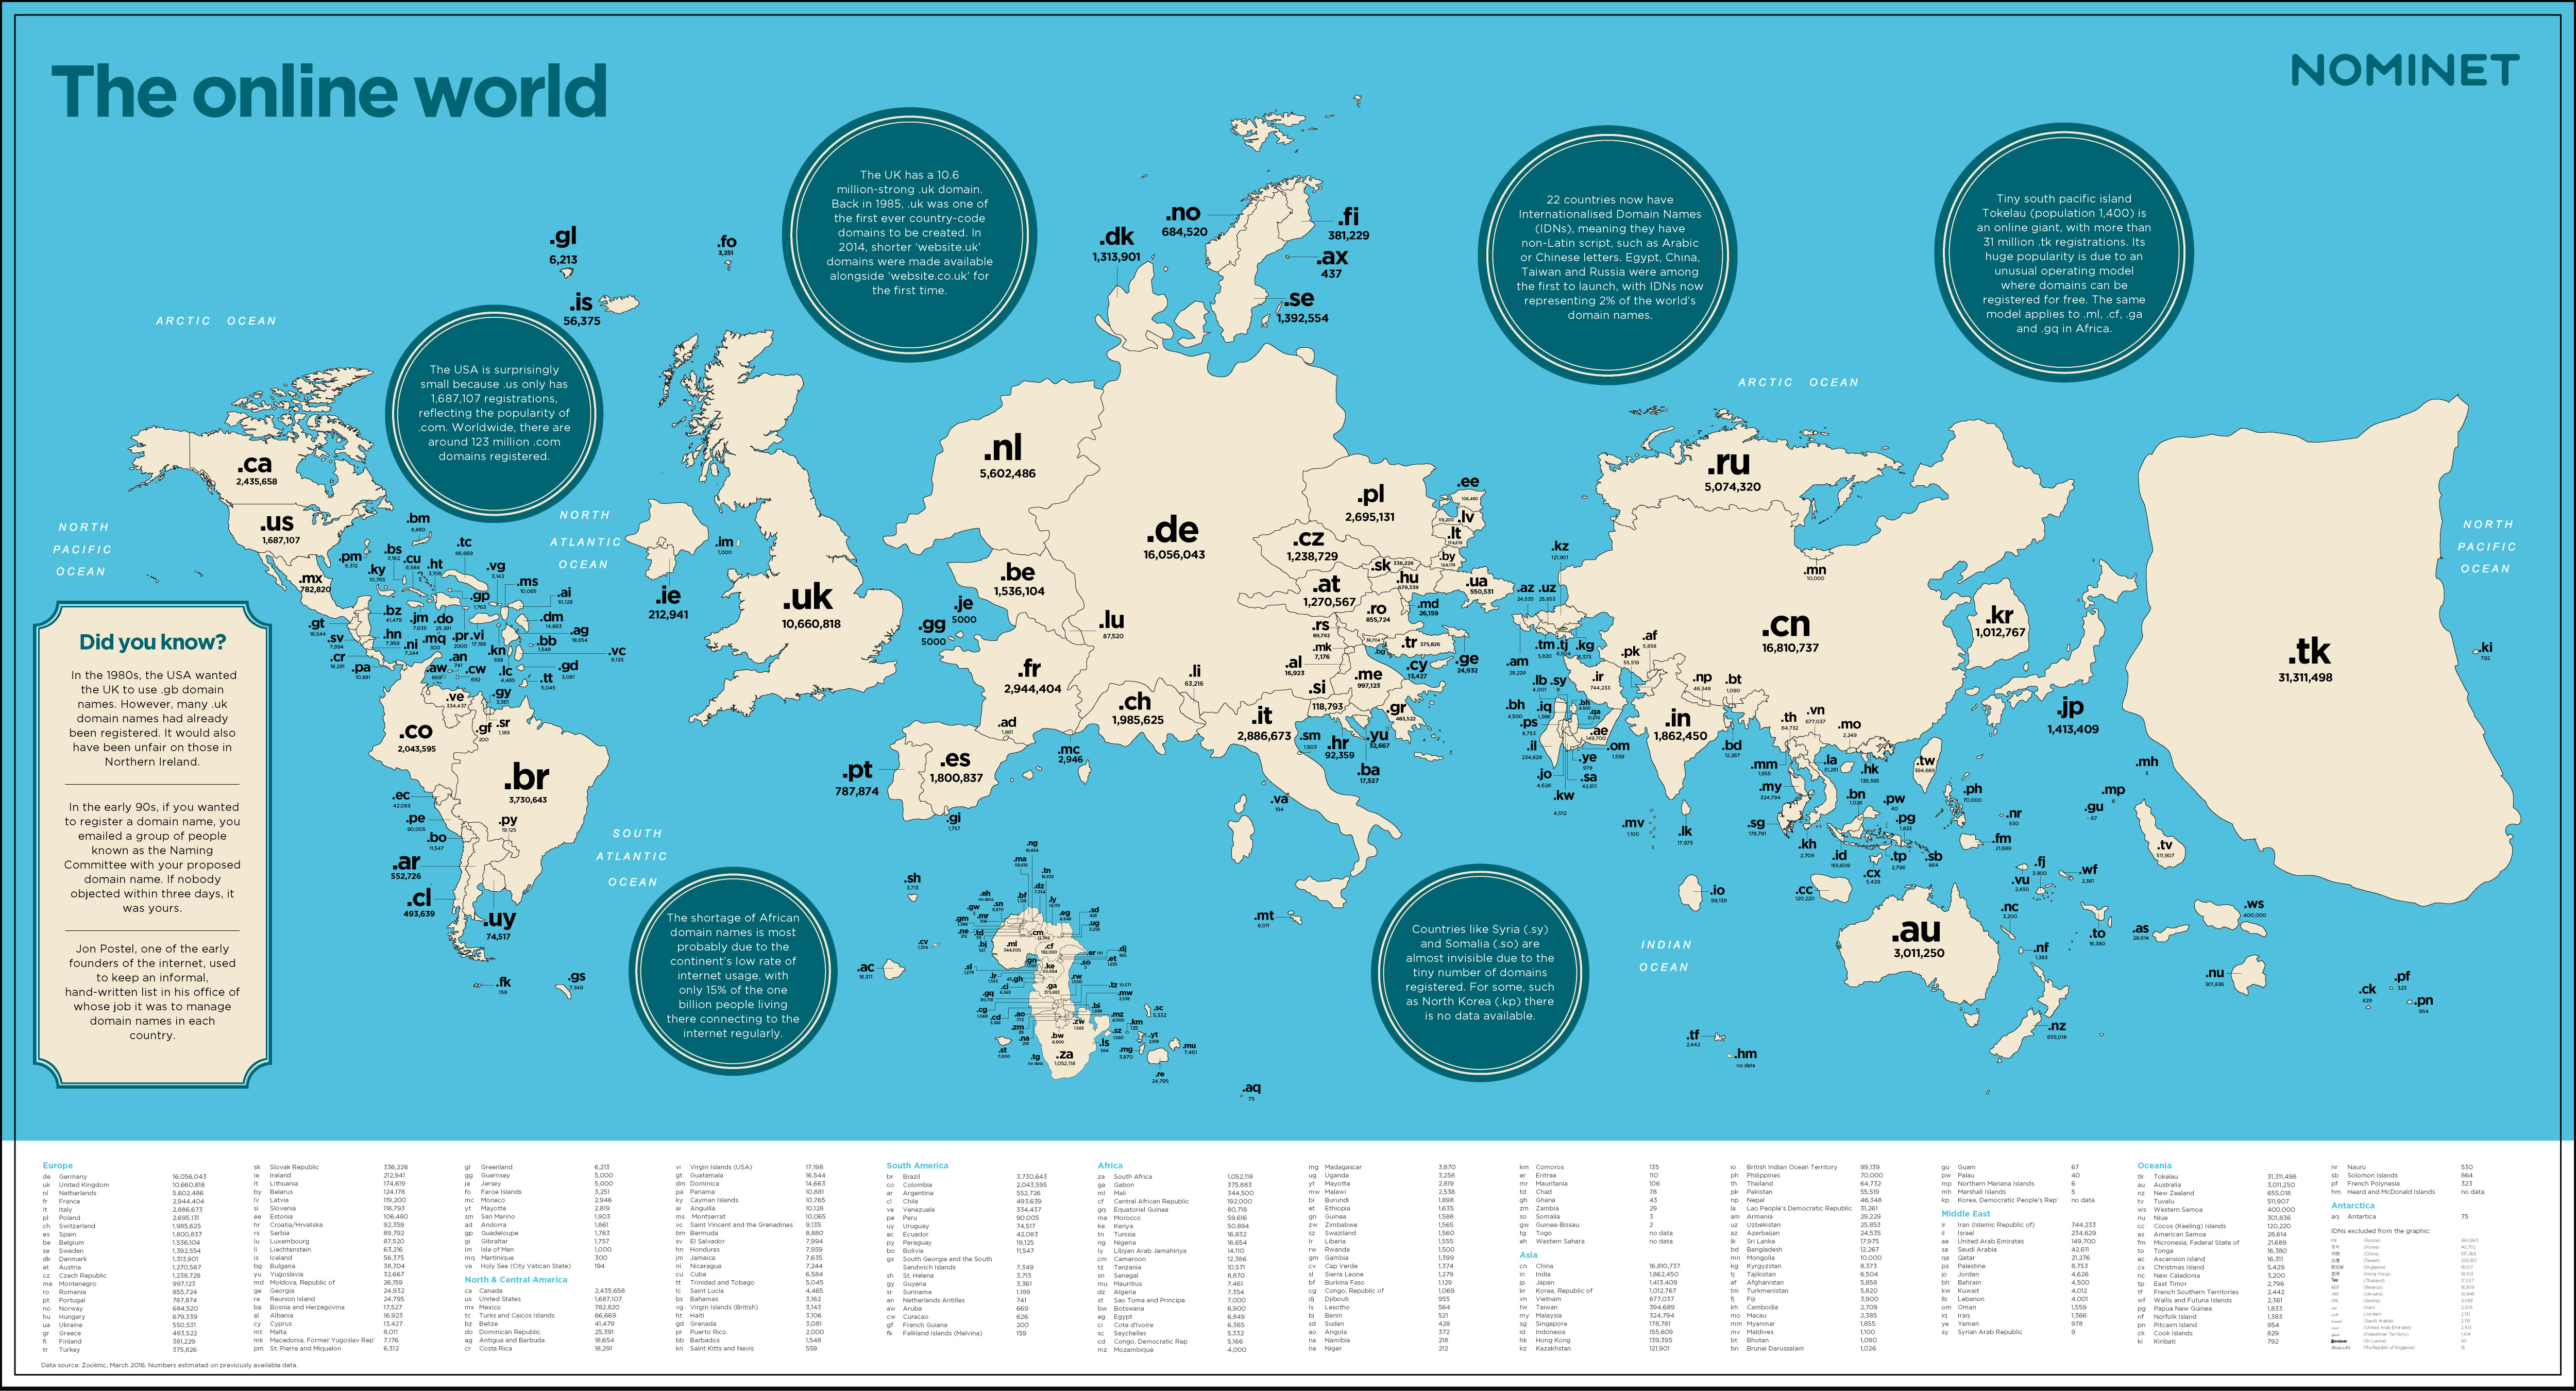 Mapeando el mundo online